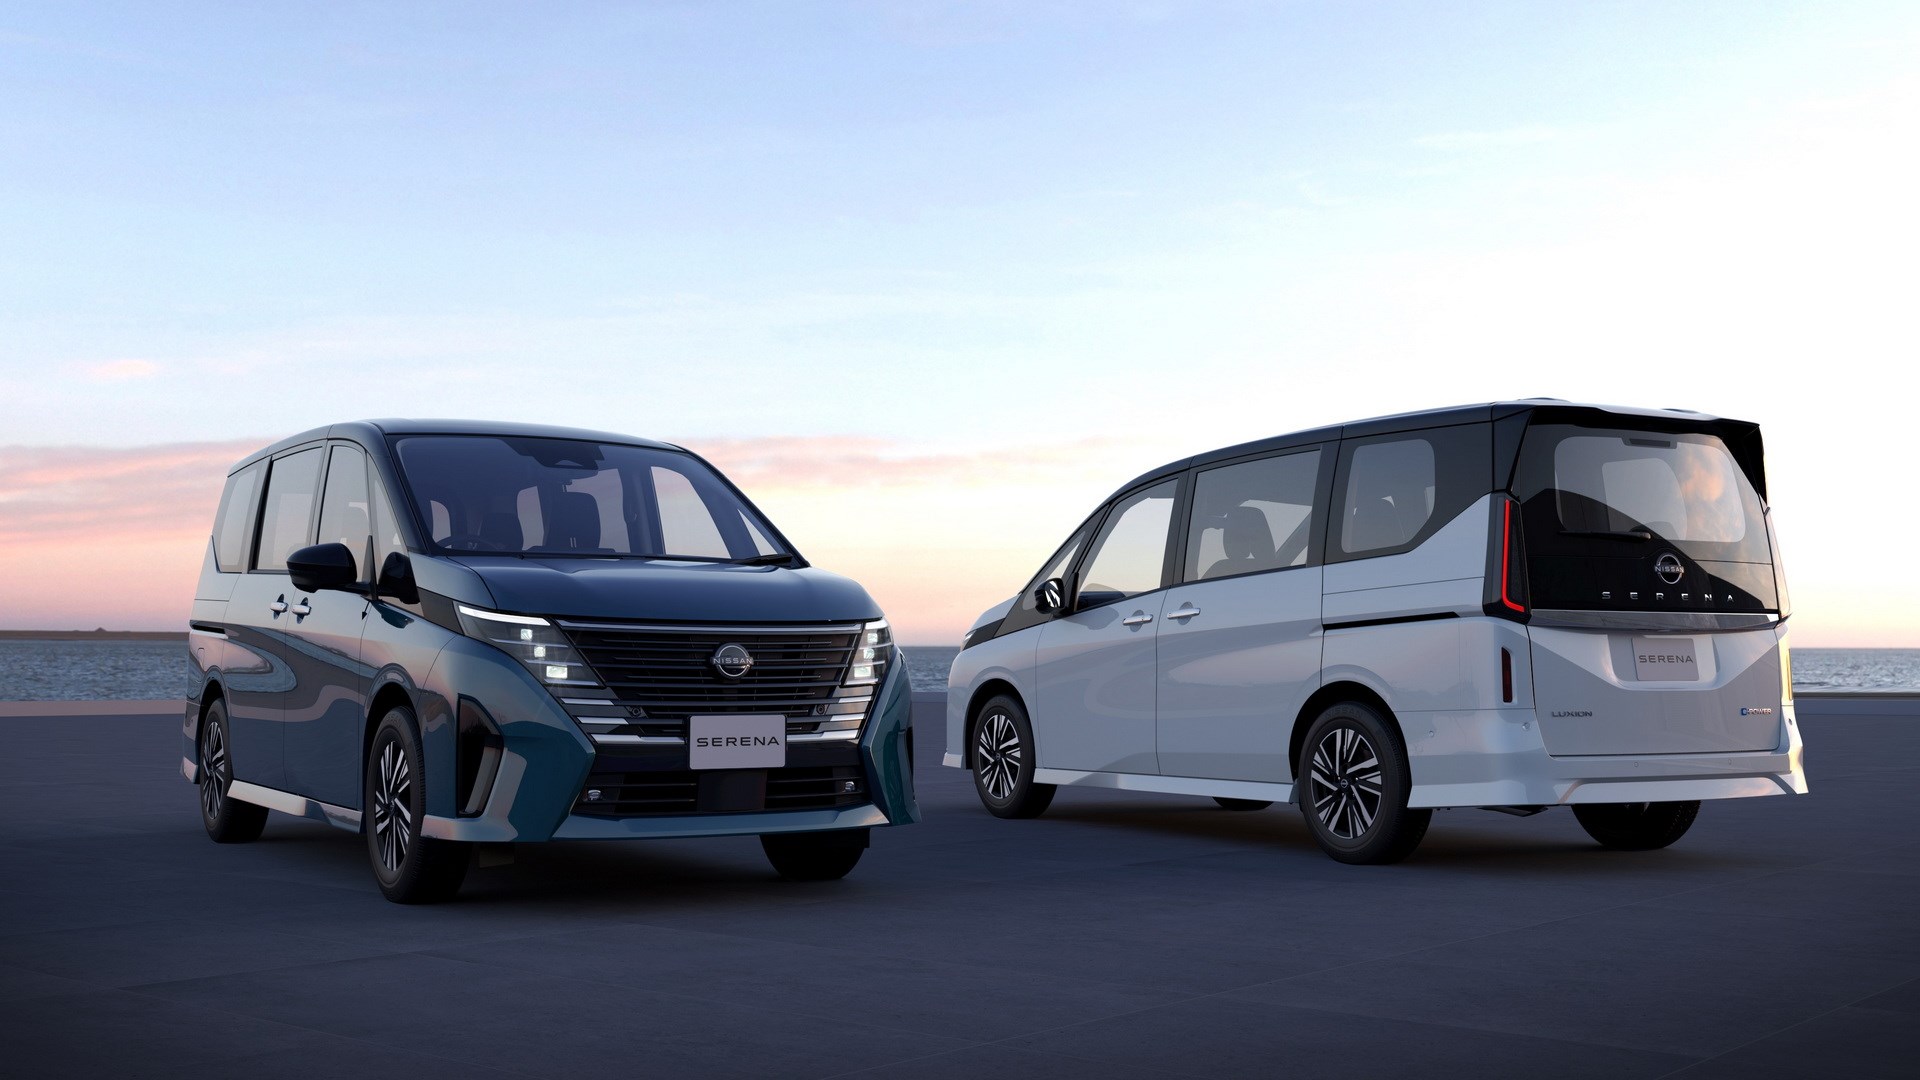 Yeni Nissan Serena minivan tanıtıldı: İşte tasarımı ve özellikler